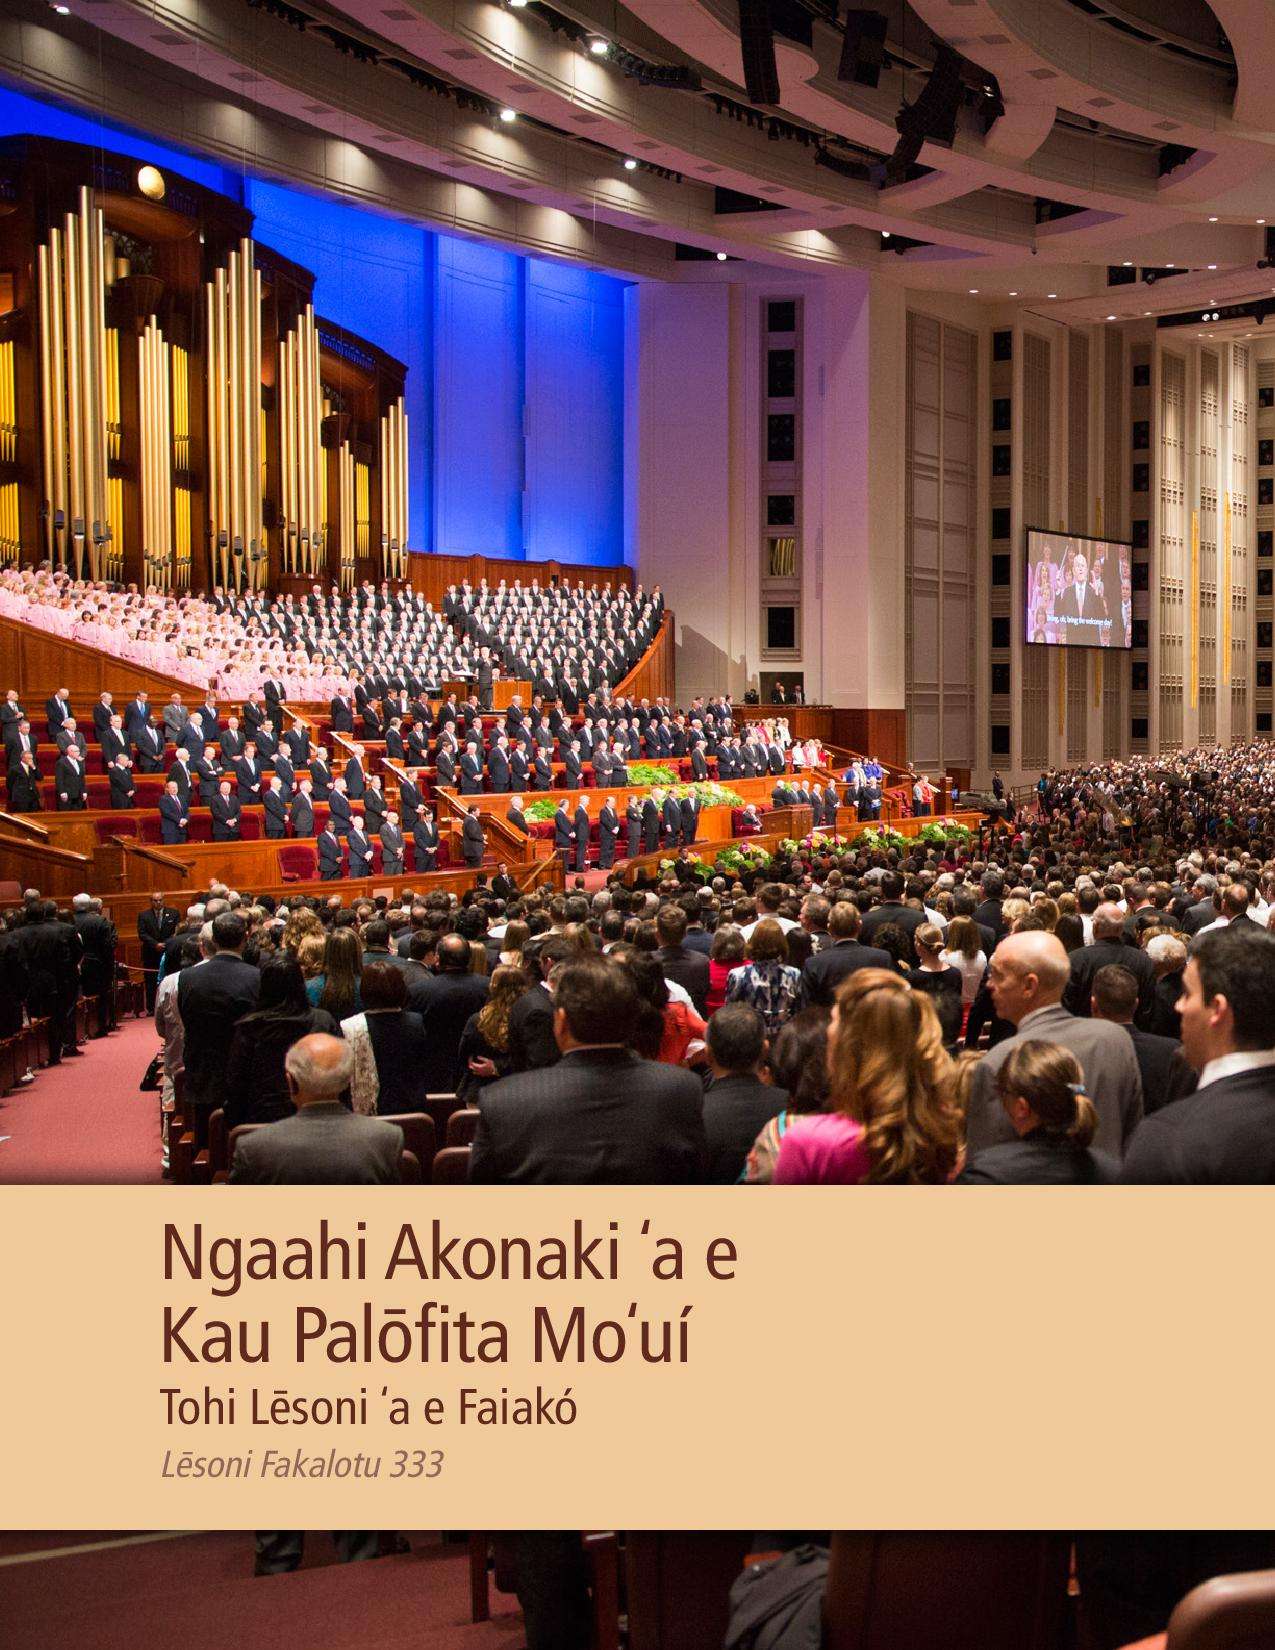 Tohi Lēsoni ʻa e Faiakó ʻi he Ngaahi Akonaki ʻa e Kau Palōfita Moʻuí